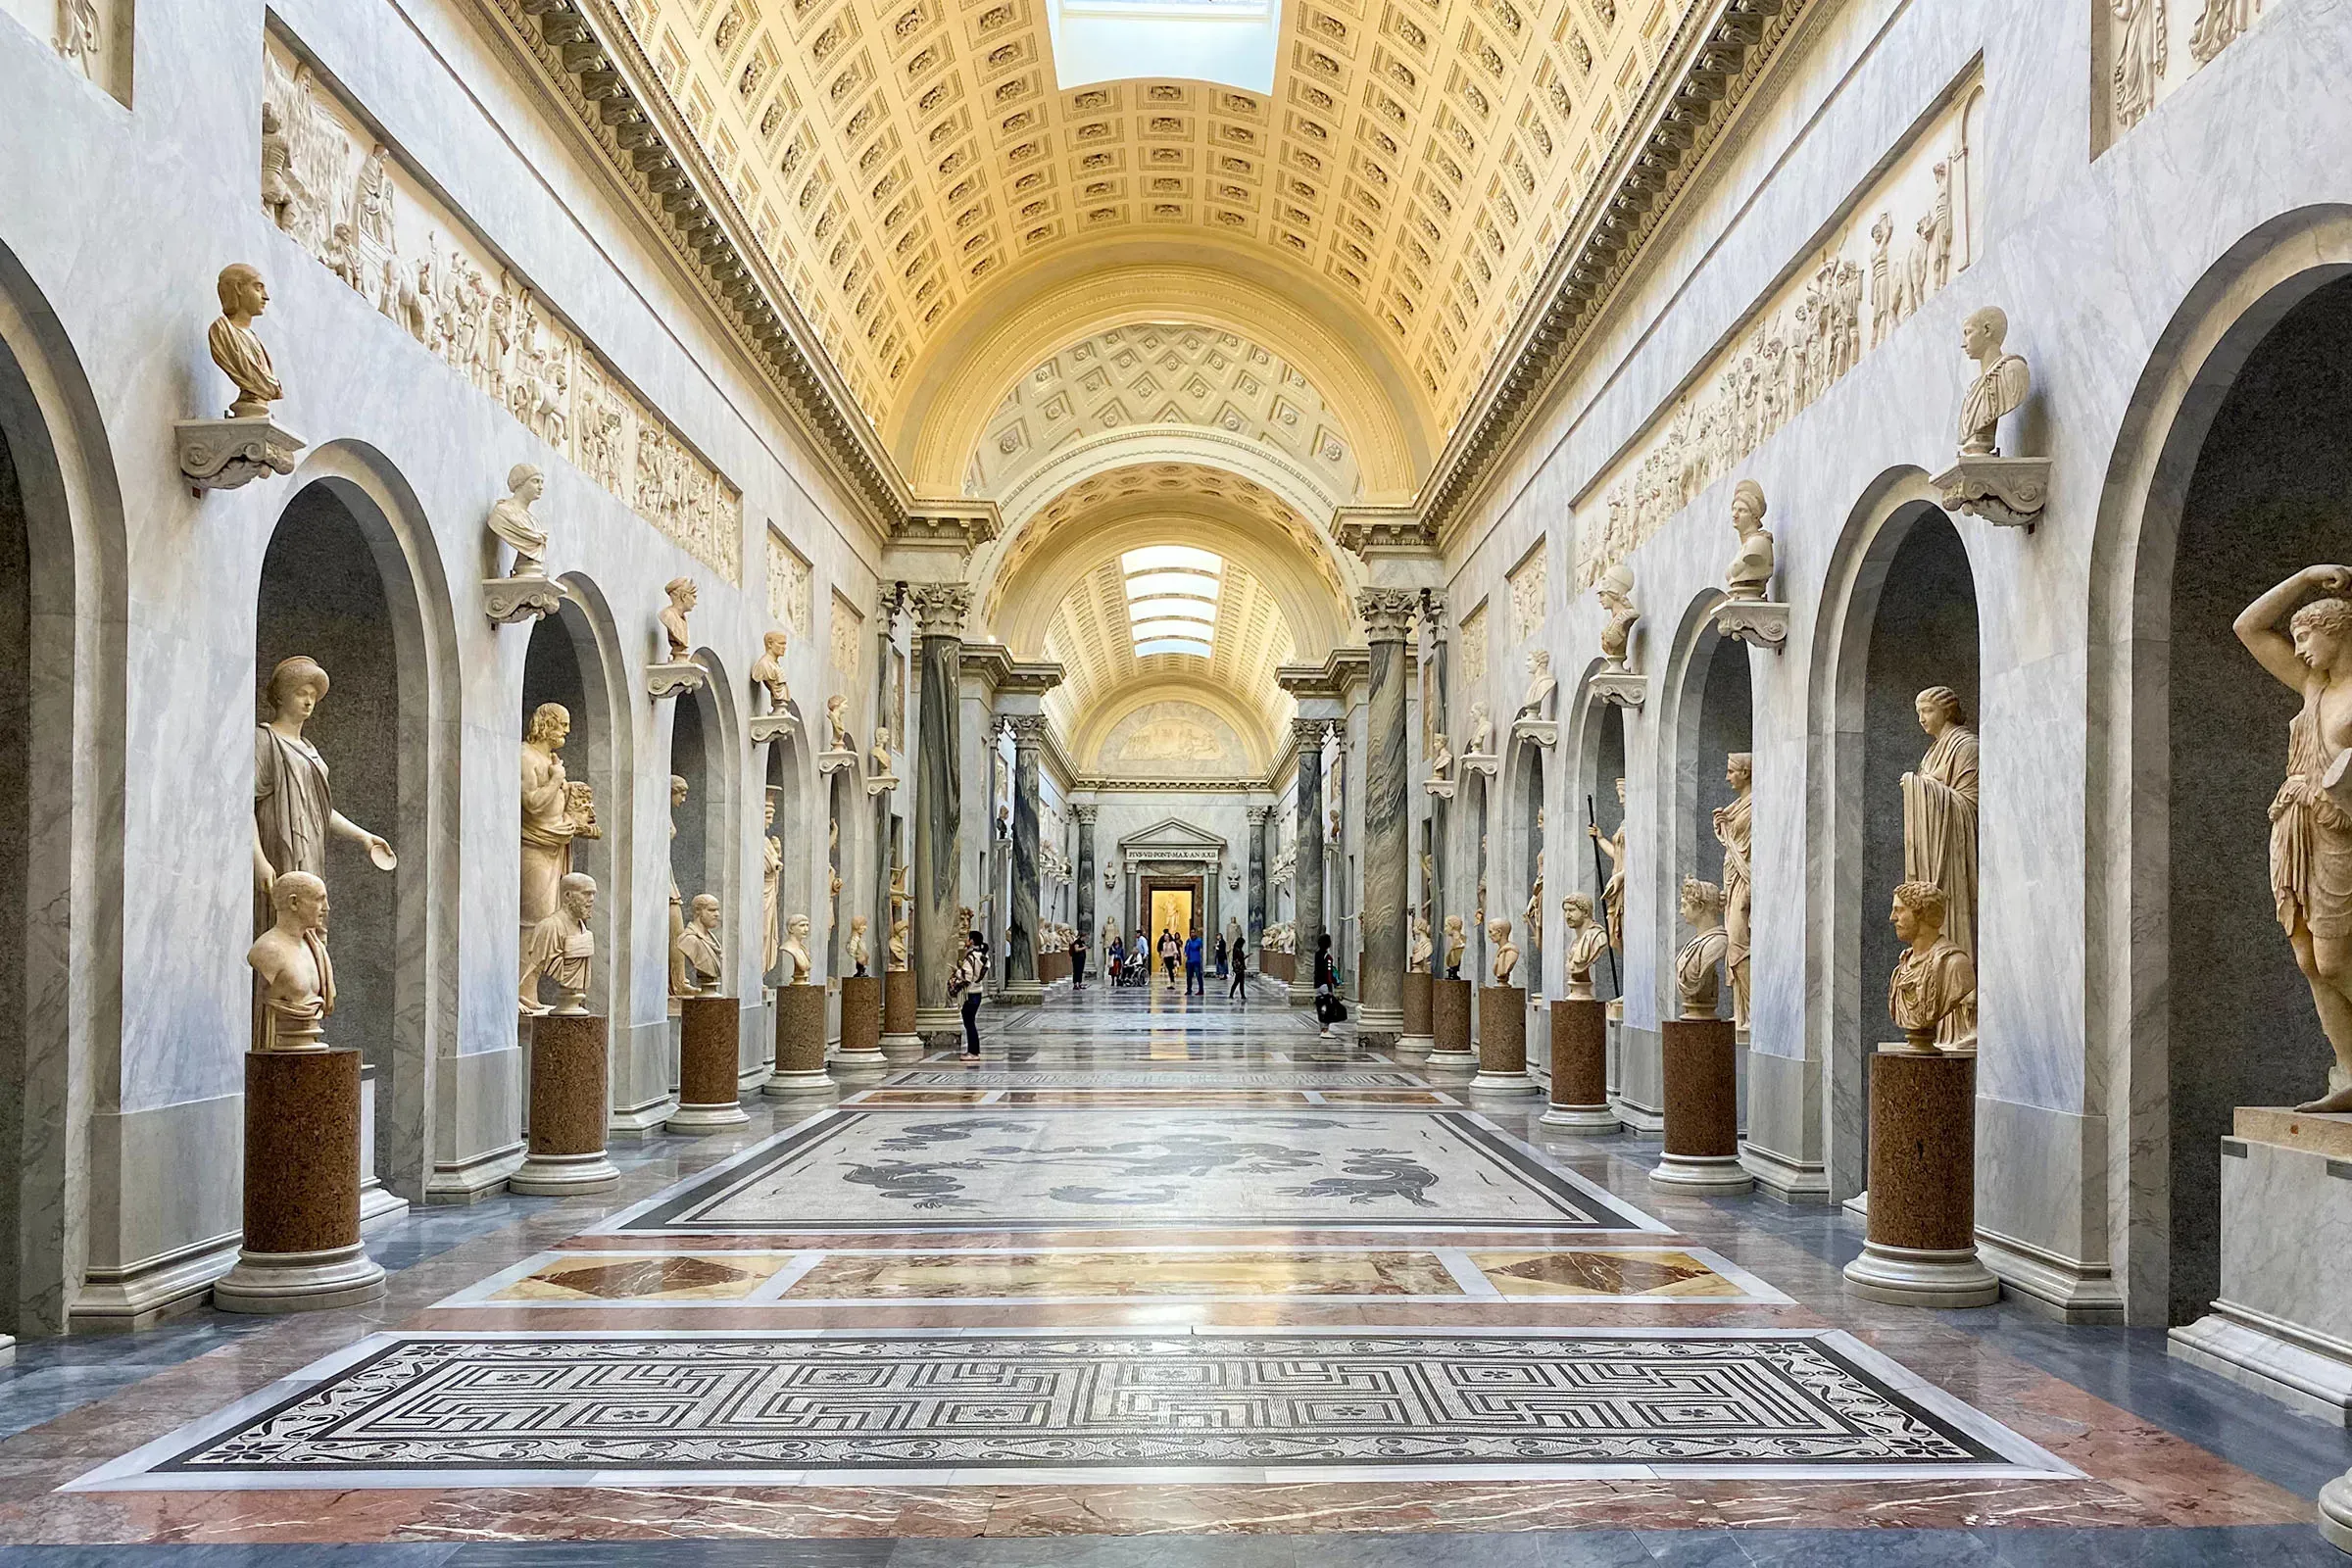 Meraviglie Artistiche Vaticane & Cappella Sistina